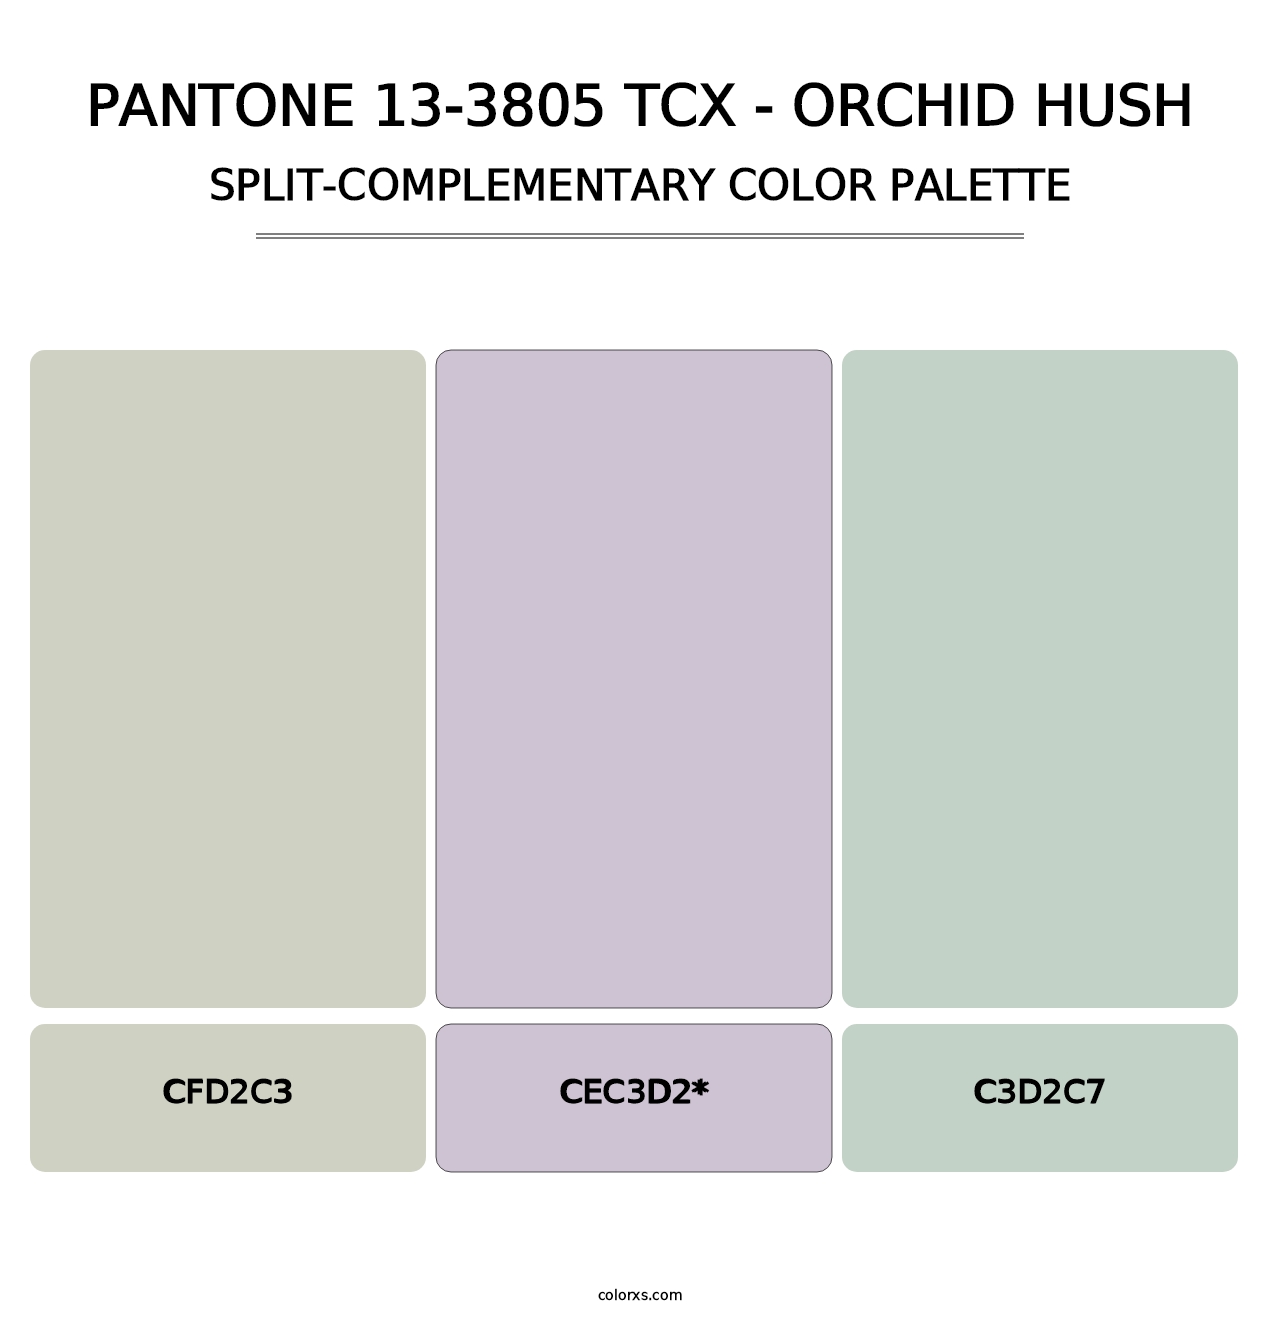 PANTONE 13-3805 TCX - Orchid Hush - Split-Complementary Color Palette